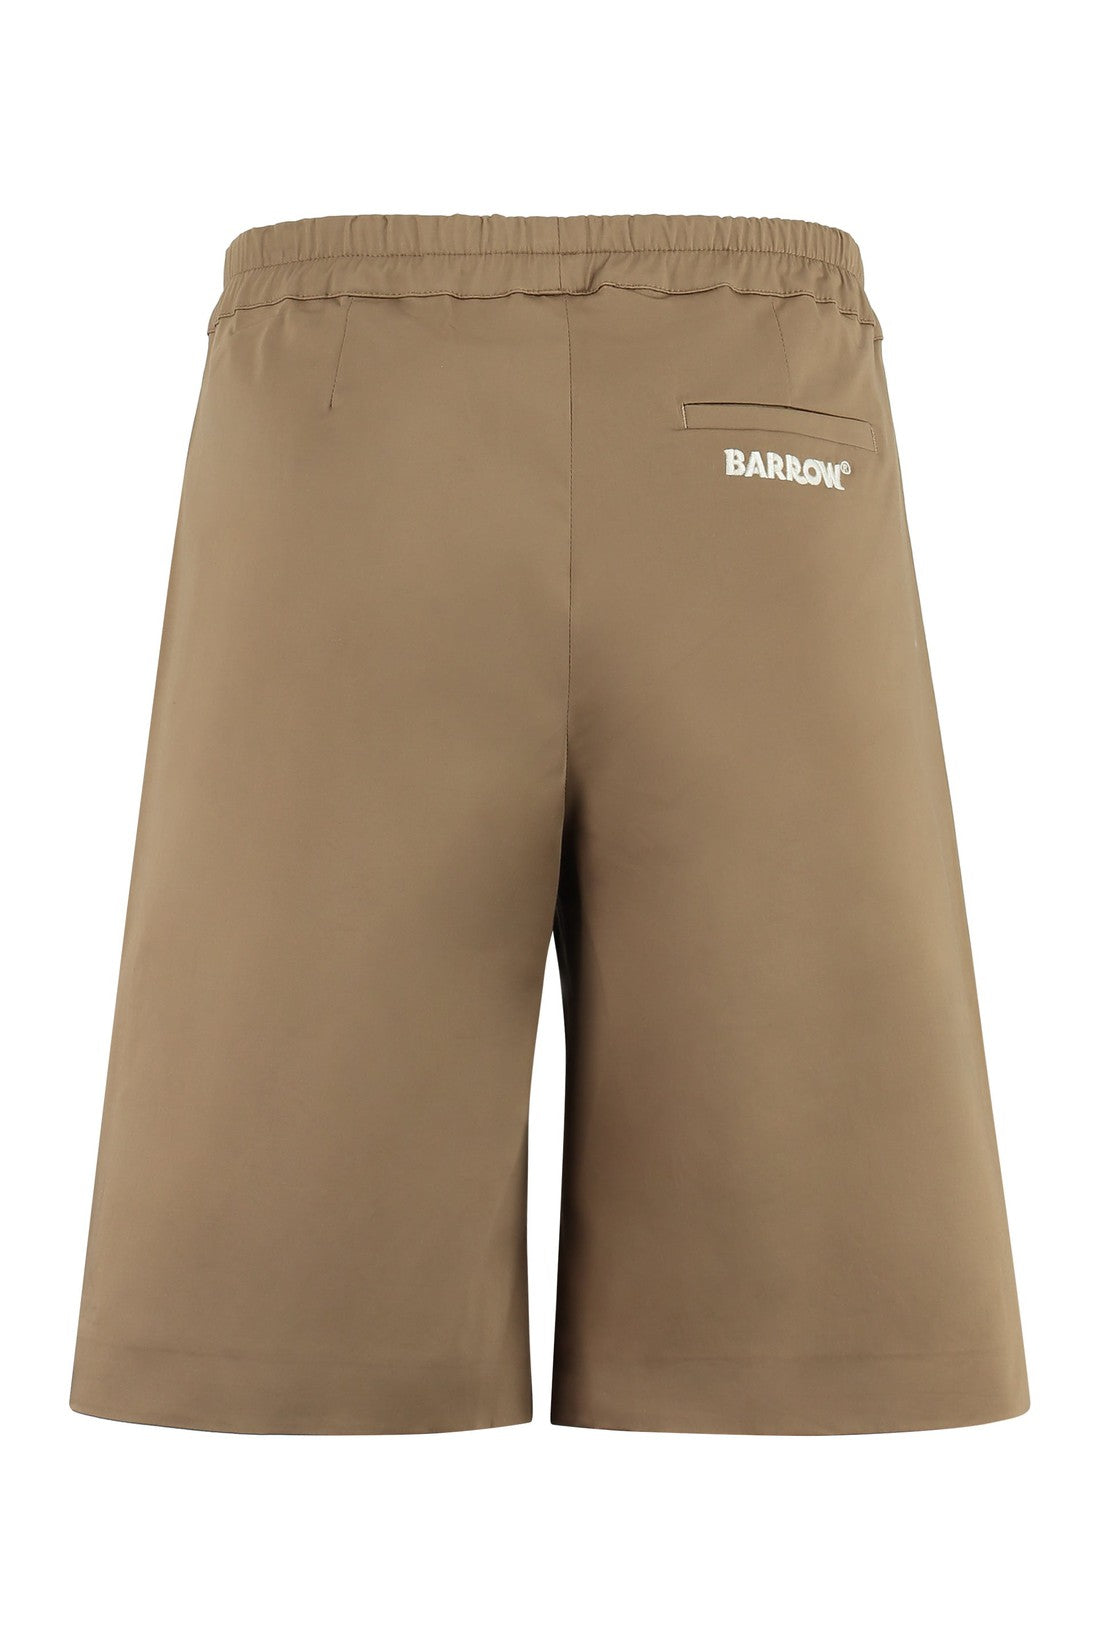 Barrow-OUTLET-SALE-Cotton bermuda shorts-ARCHIVIST